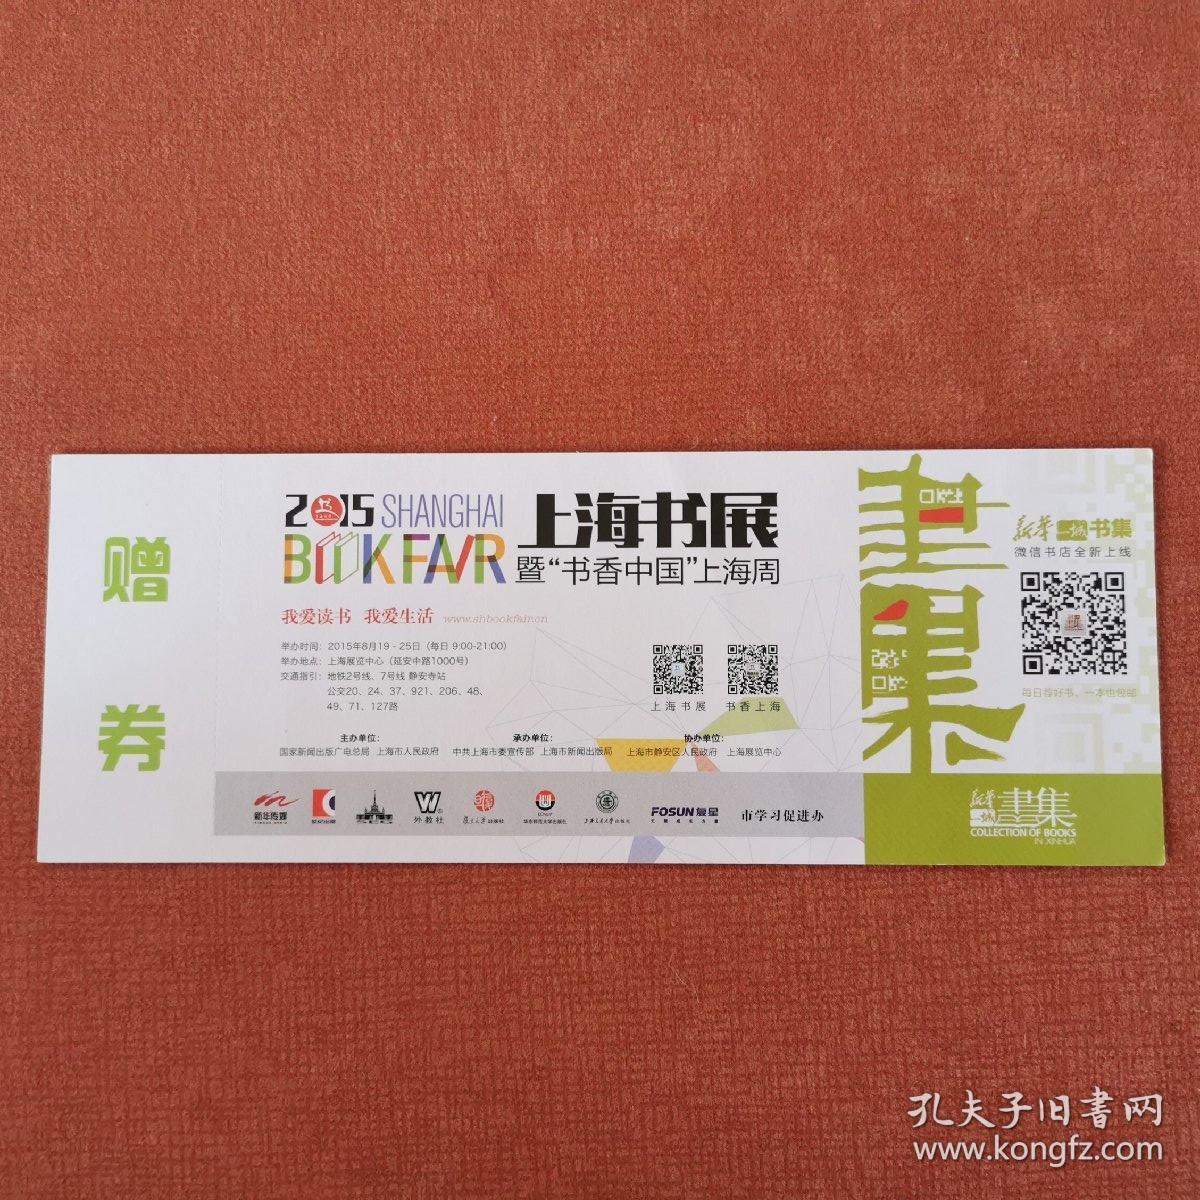 2015年上海书展门票（全品）